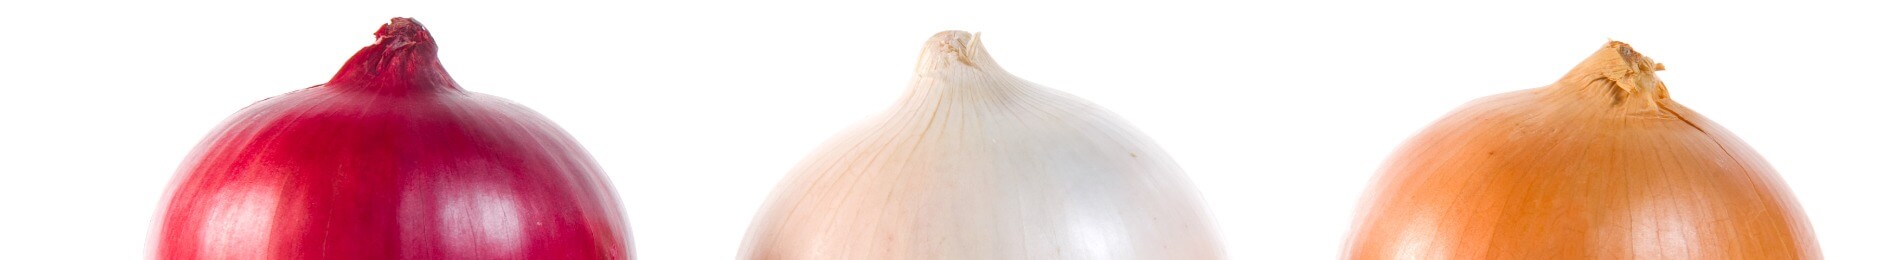 Onion Tips, Myths & FAQs